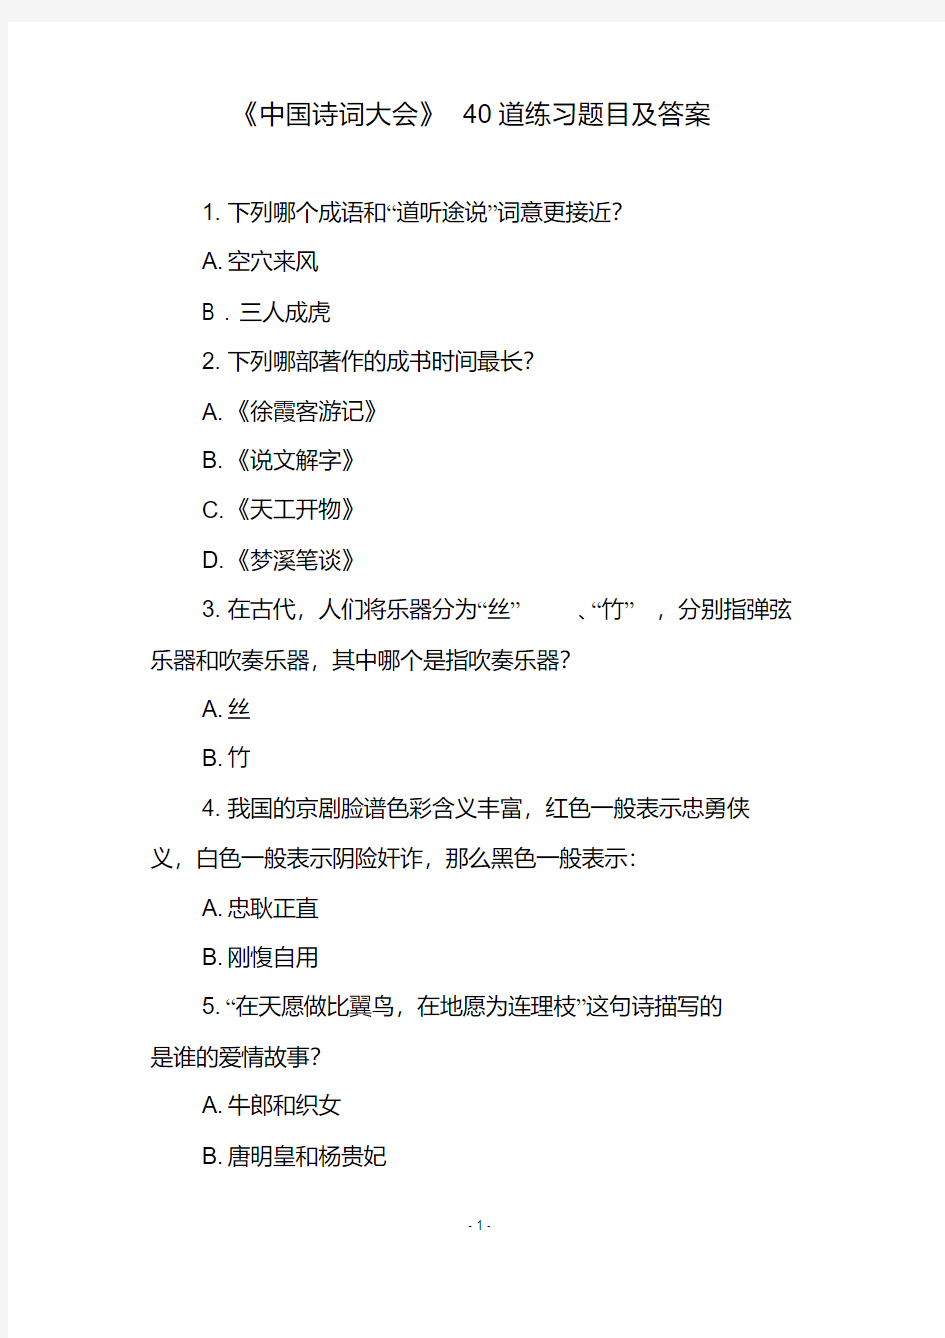 《中国诗词大会》40道练习题目及答案